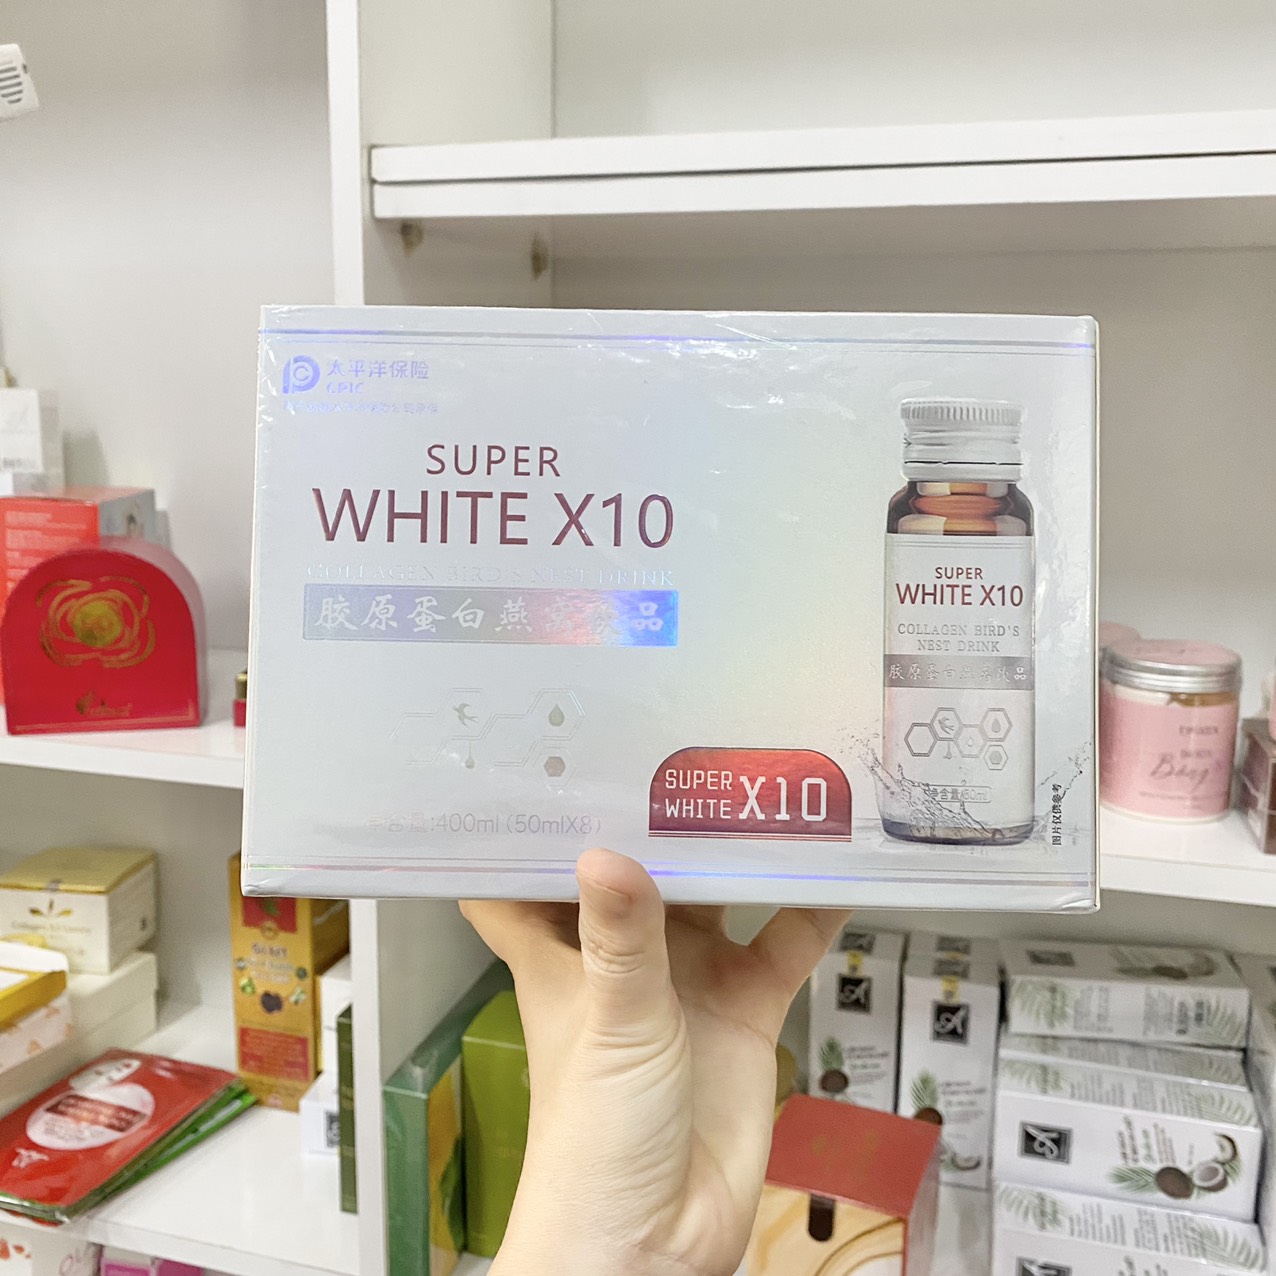 Collagen white x10 giúp làm trắng da hiệu quả không?